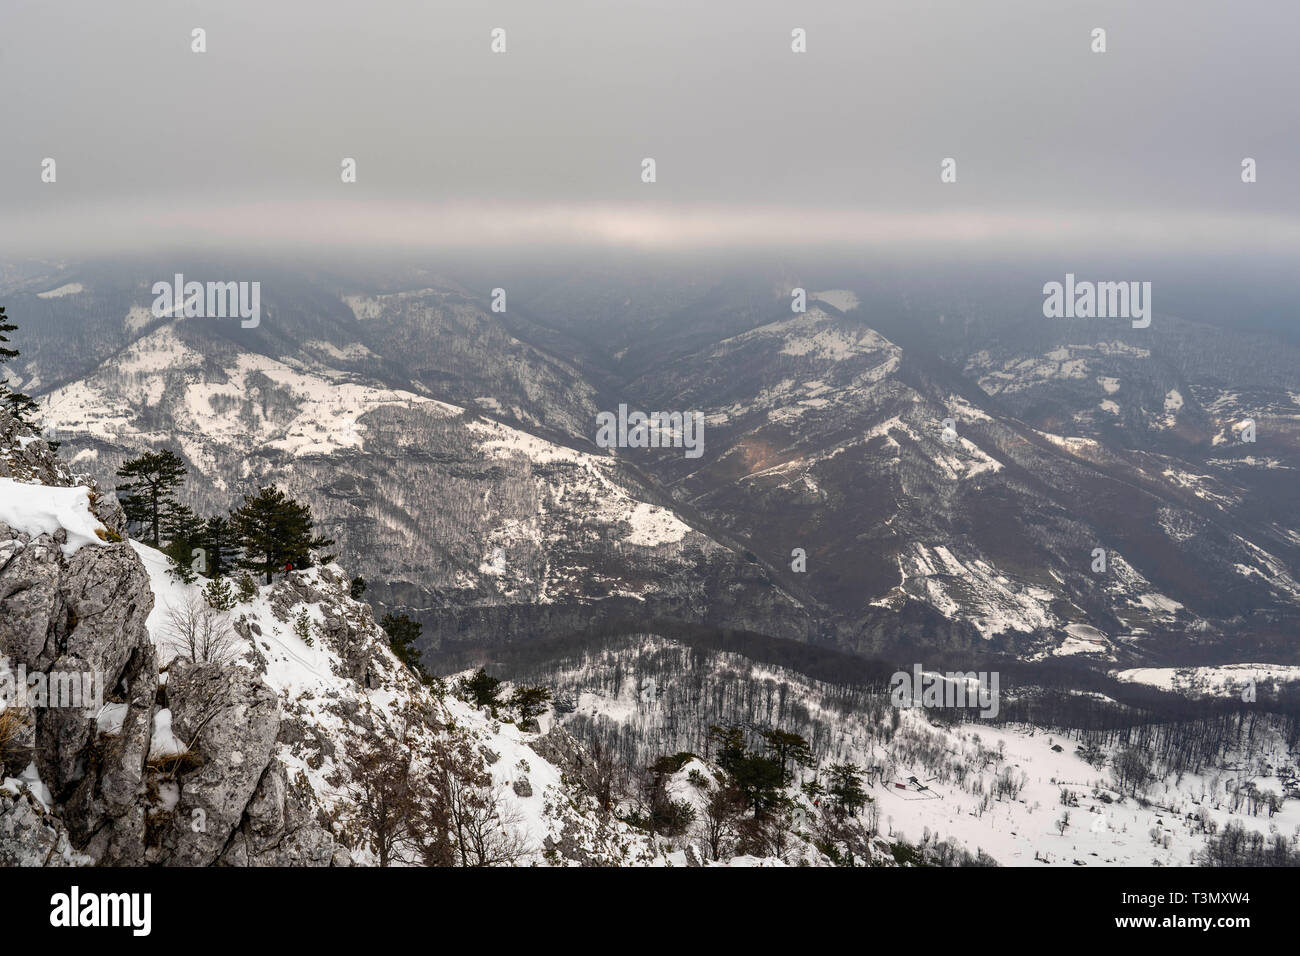 Black pine in snowy season on the peaks of Mehedinti Mountains, Romania Stock Photo